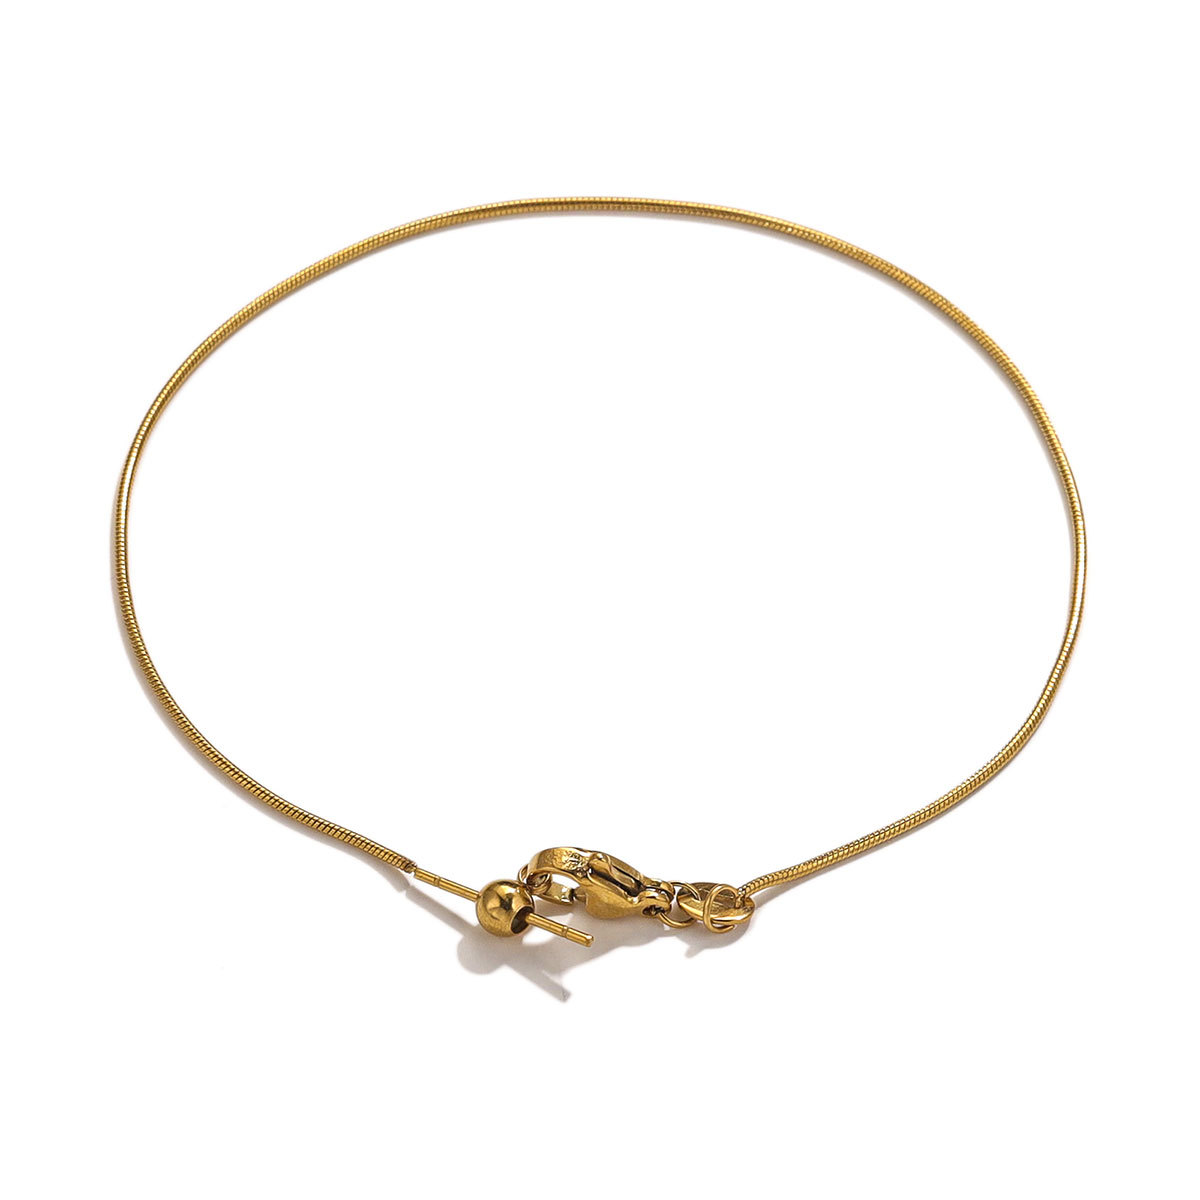 6:Gold-round snake chain